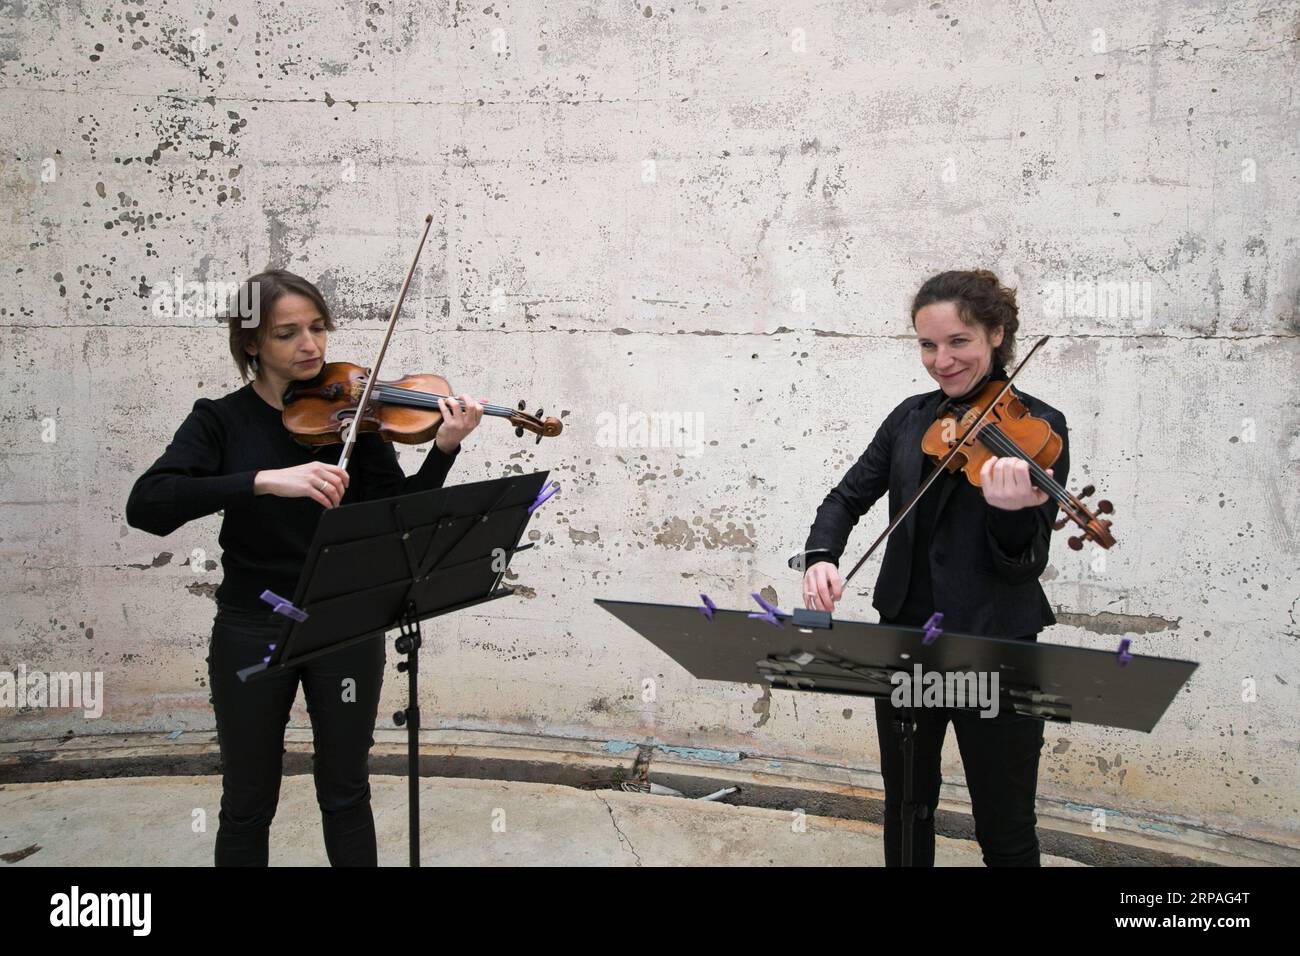 (190509) -- CANBERRA, 9 maggio 2019 (Xinhua) -- due violinisti si esibiscono durante un concerto del 25° Festival Internazionale di musica di Canberra (CIMF) all'Osservatorio di Mount Stromlo nella capitale australiana Canberra, 8 maggio 2019. Il festival, che presenta la musica di Bach come uno dei suoi temi, ha più di 40 eventi in 10 giorni in diversi luoghi di Canberra. (Xinhua/Liang Tianzhou) AUSTRALIA-CANBERRA-INTERNATIONAL MUSIC FESTIVAL PUBLICATIONxNOTxINxCHN Foto Stock